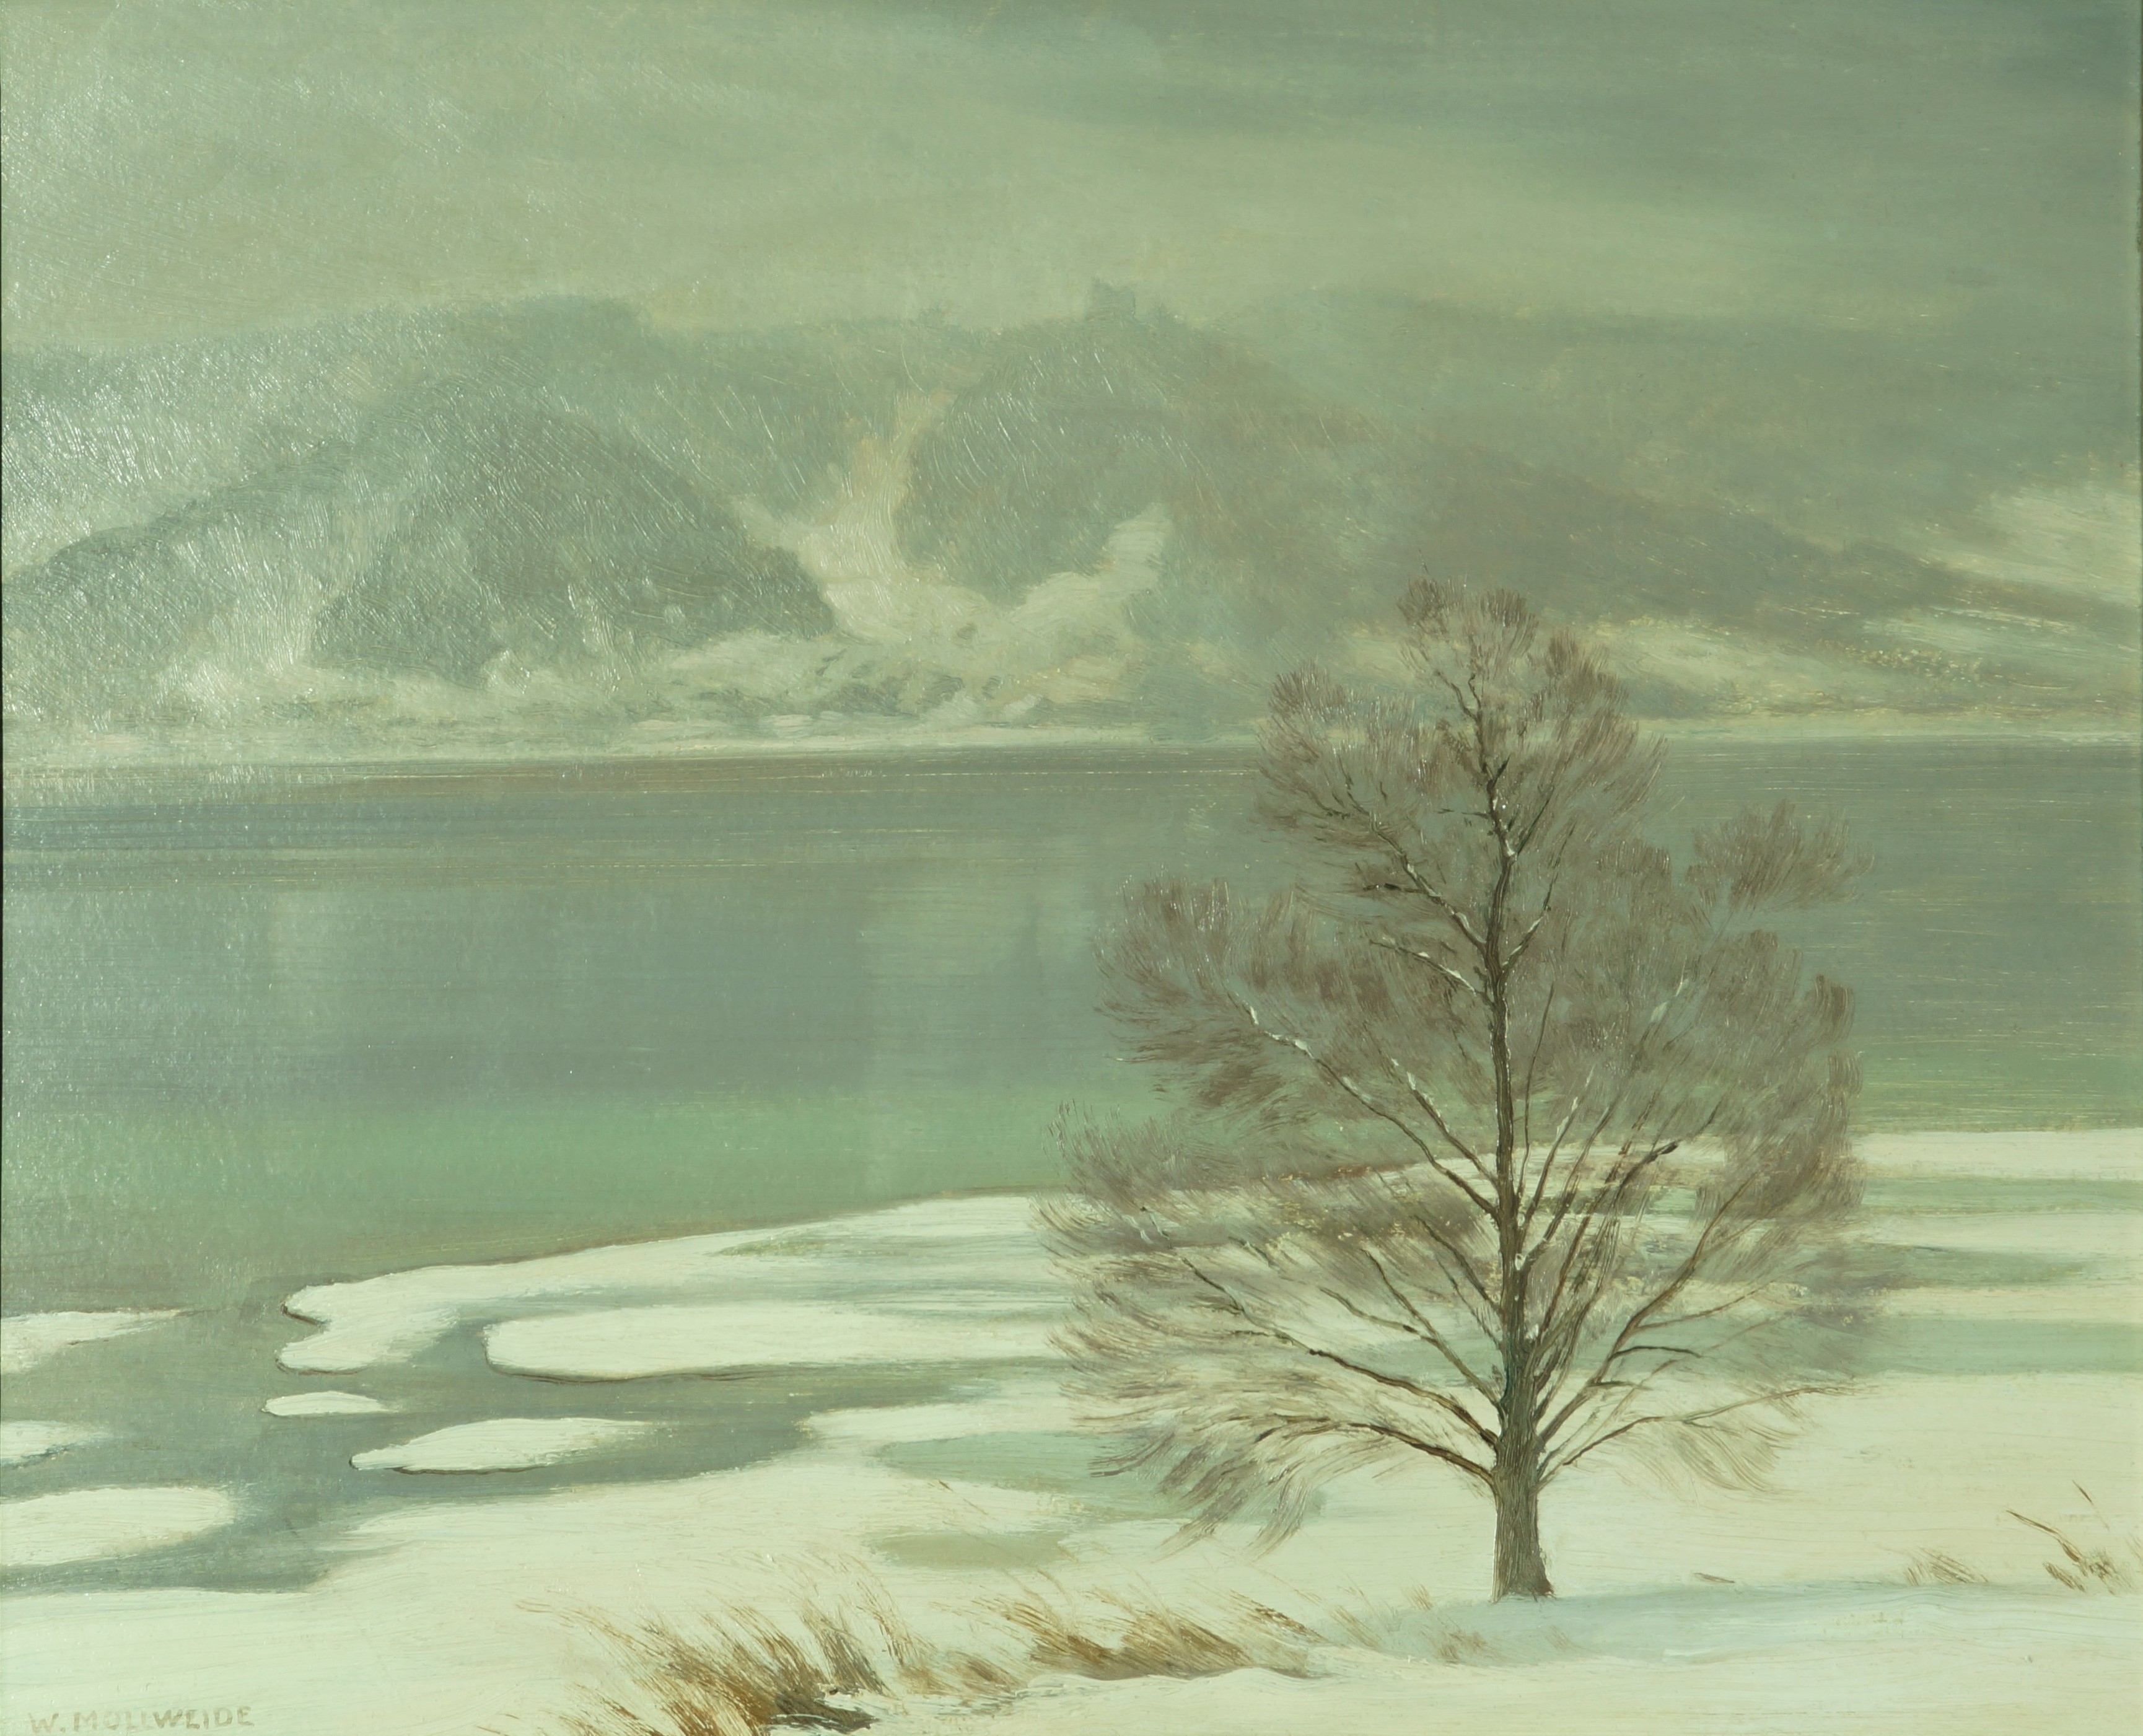  Werner Mollweide, Winter am See, Stadtmuseum Stockach, Kunstsammlung Heinrich Wagner 